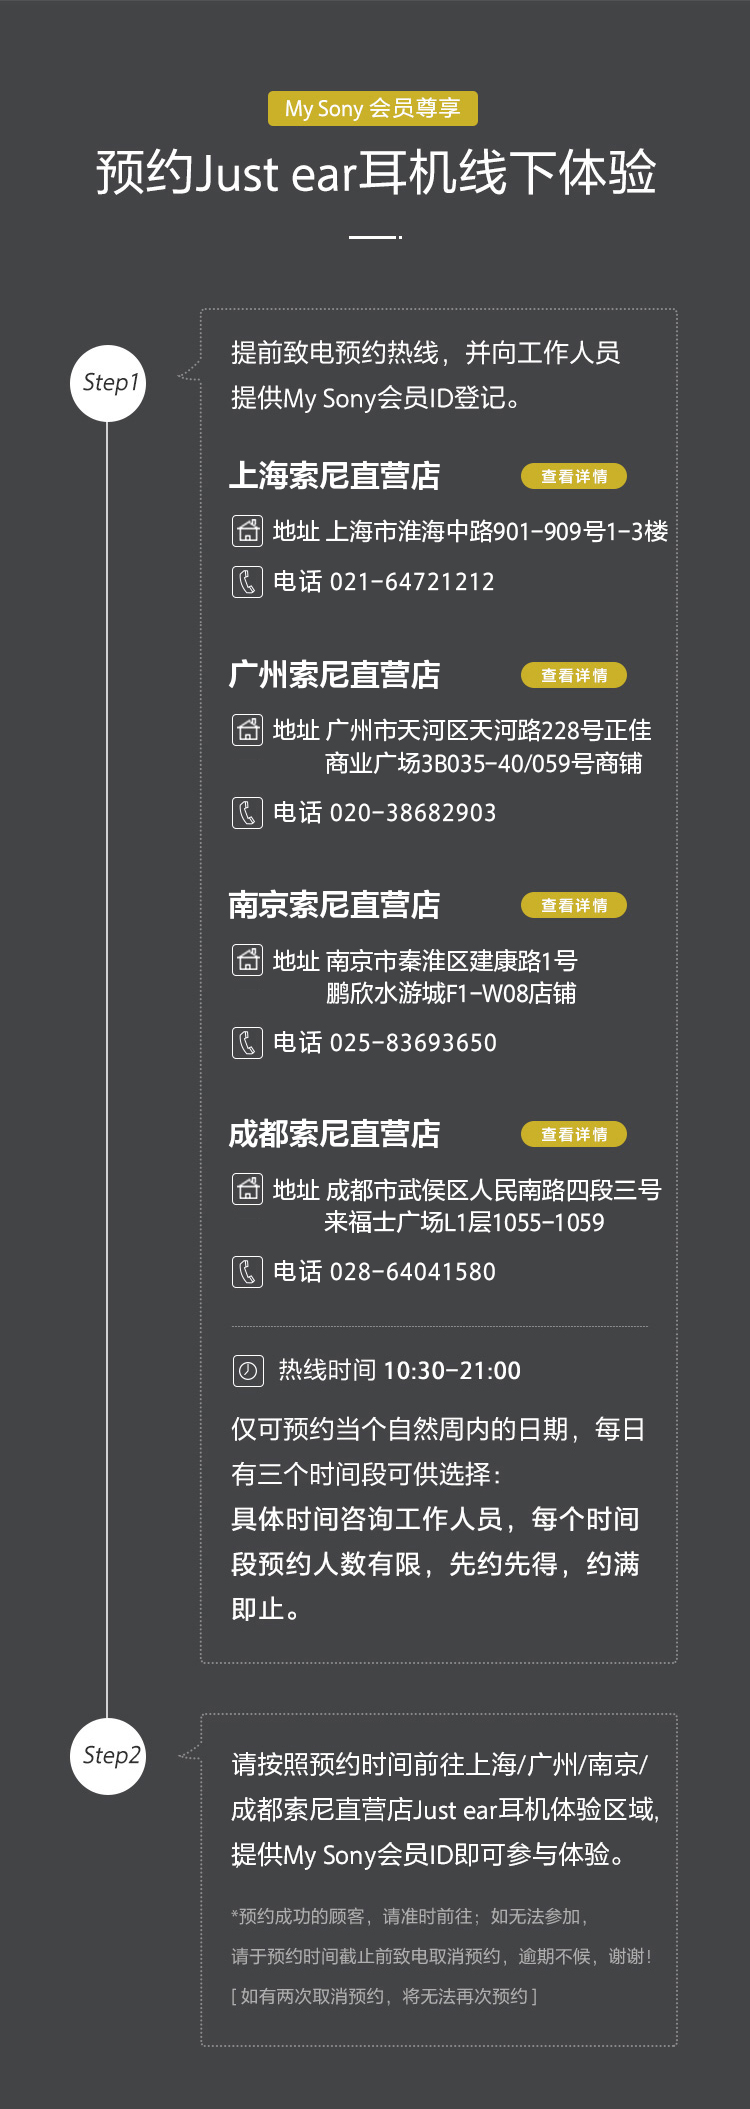 Just ear耳机线下体验预约：上海索尼直营店电话021-64721212；广州索尼直营店电话020-38682903